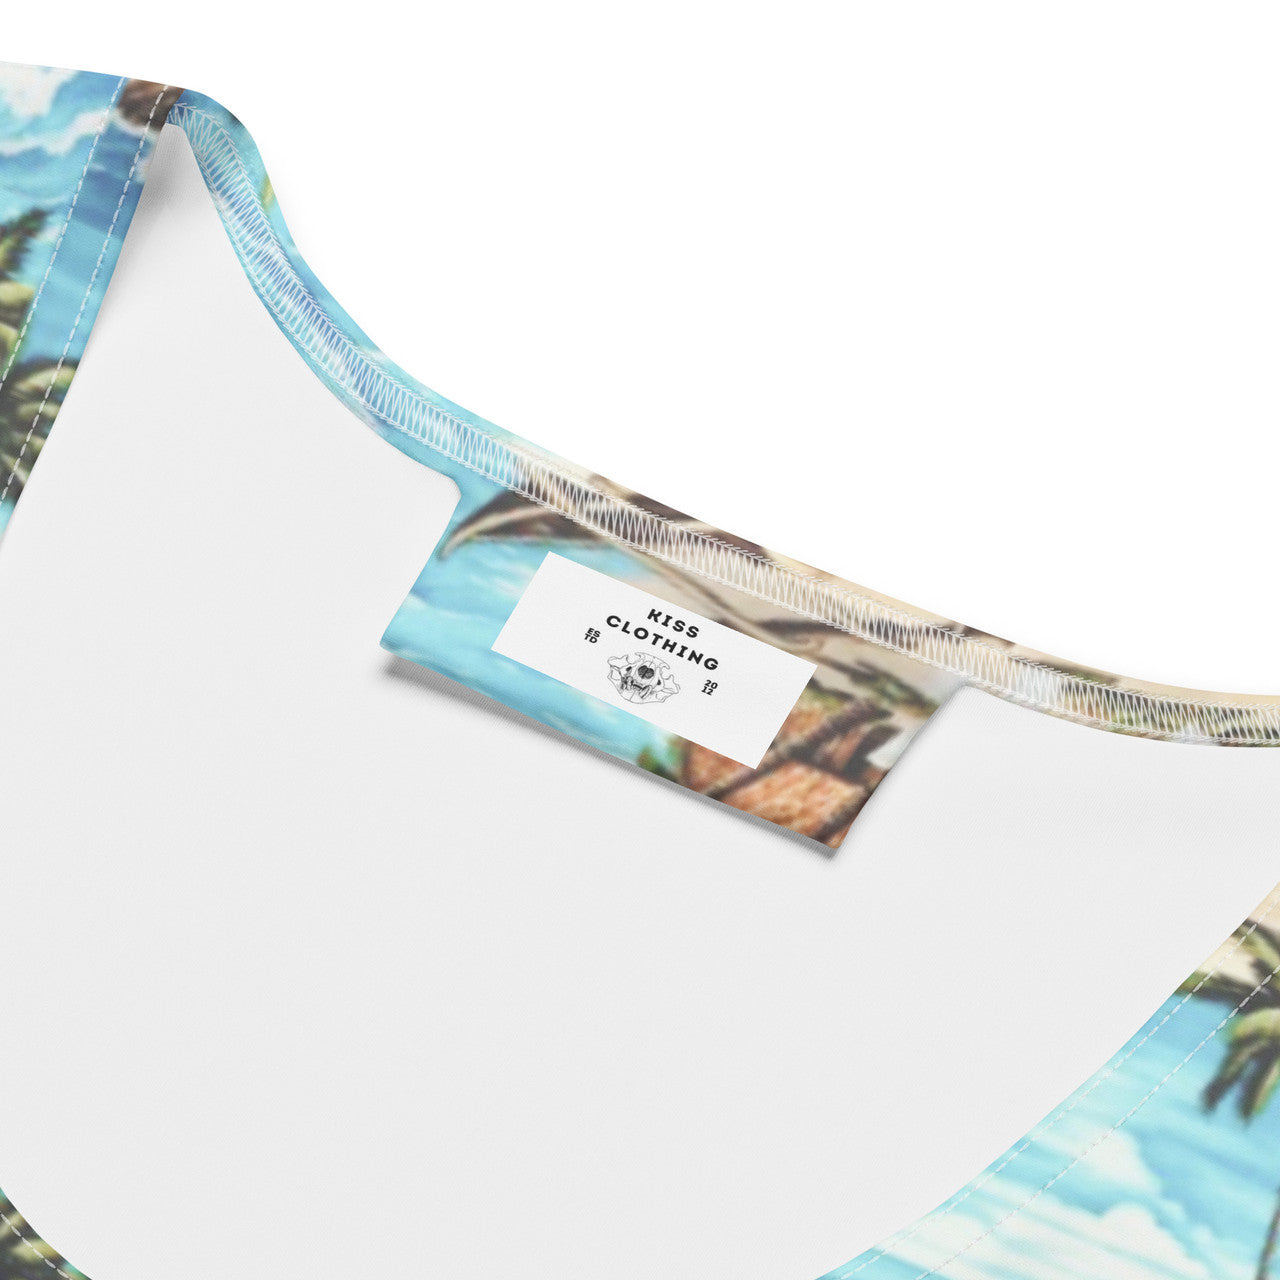 Hawaiian Island KiSS Sublimation Cut & Sew Dress - Friends Rachel Green Inspired Summer Beach Episode